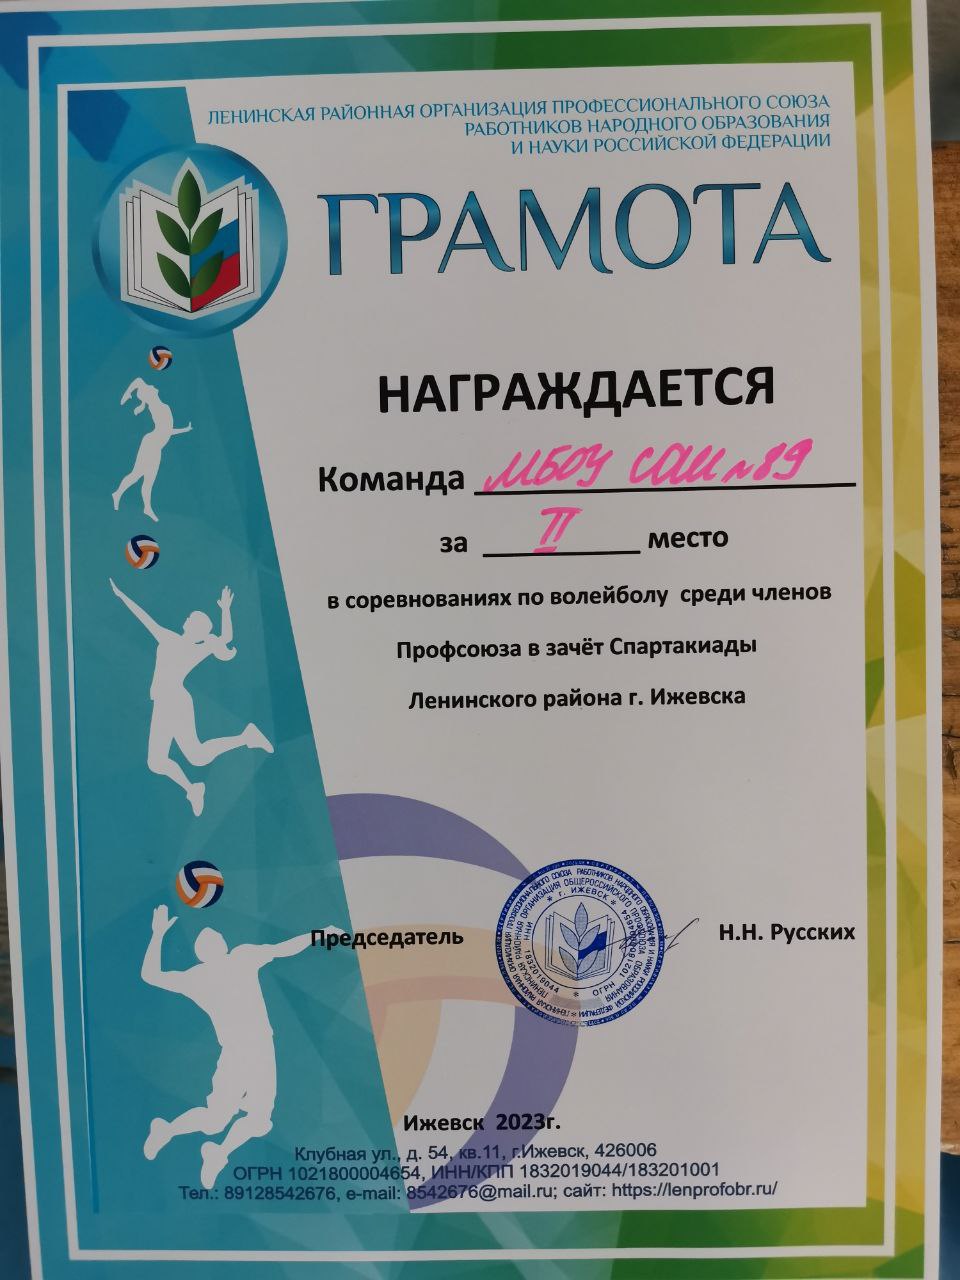 Соревнования по волейболу среди членов профсоюза в зачет Спартакиады Ленинского района.